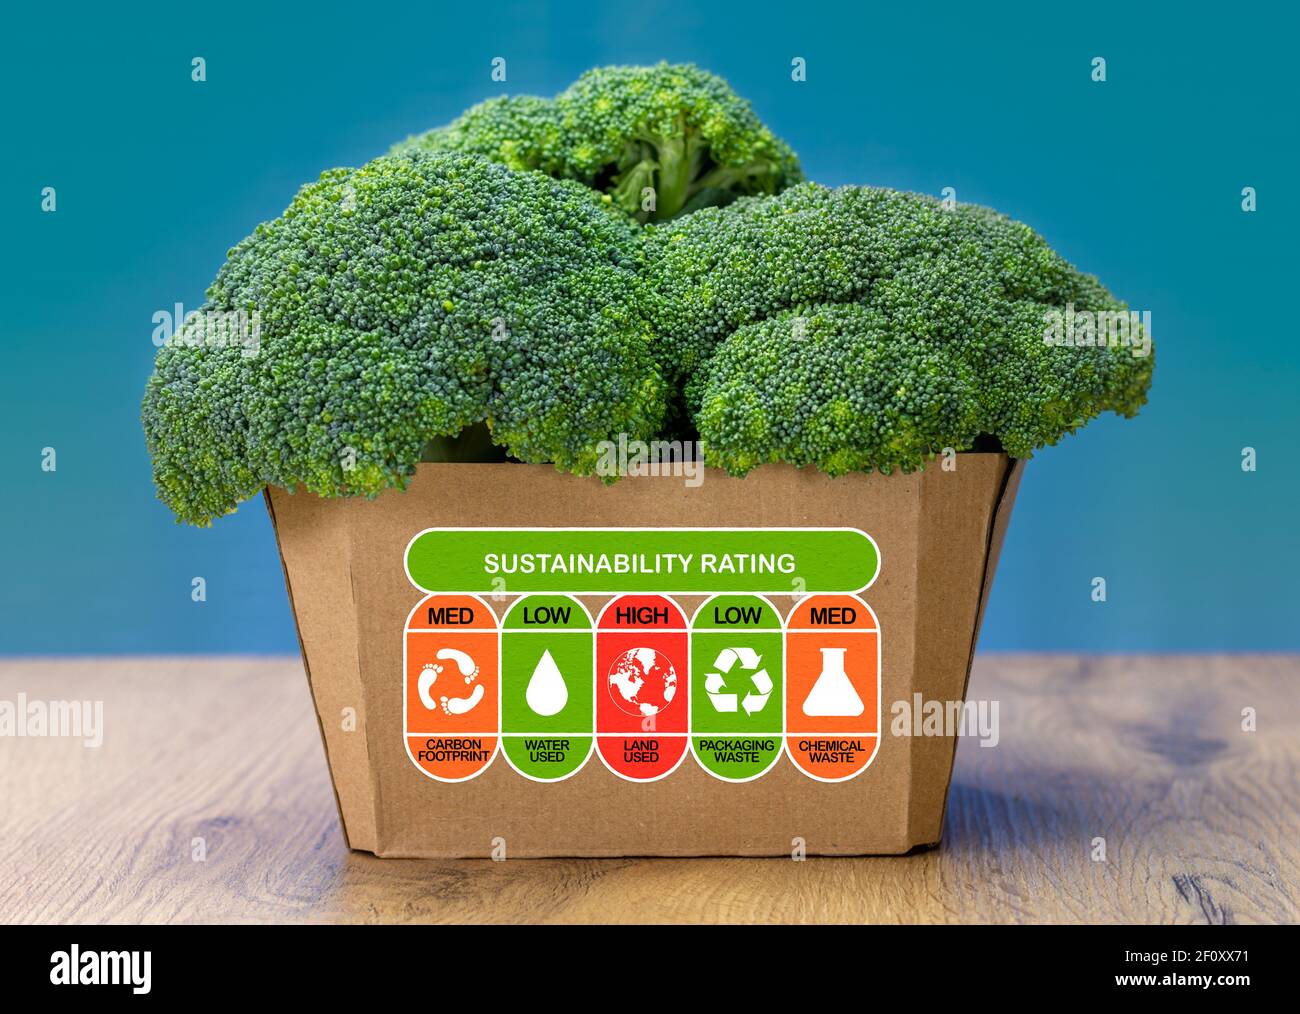 Valutazione di sostenibilità su scatola di broccoli con valori nominali alti, medi e bassi per l'impronta di carbonio degli alimenti, l'uso di acqua, l'uso del terreno, i rifiuti di imballaggio e i prodotti chimici w Foto Stock